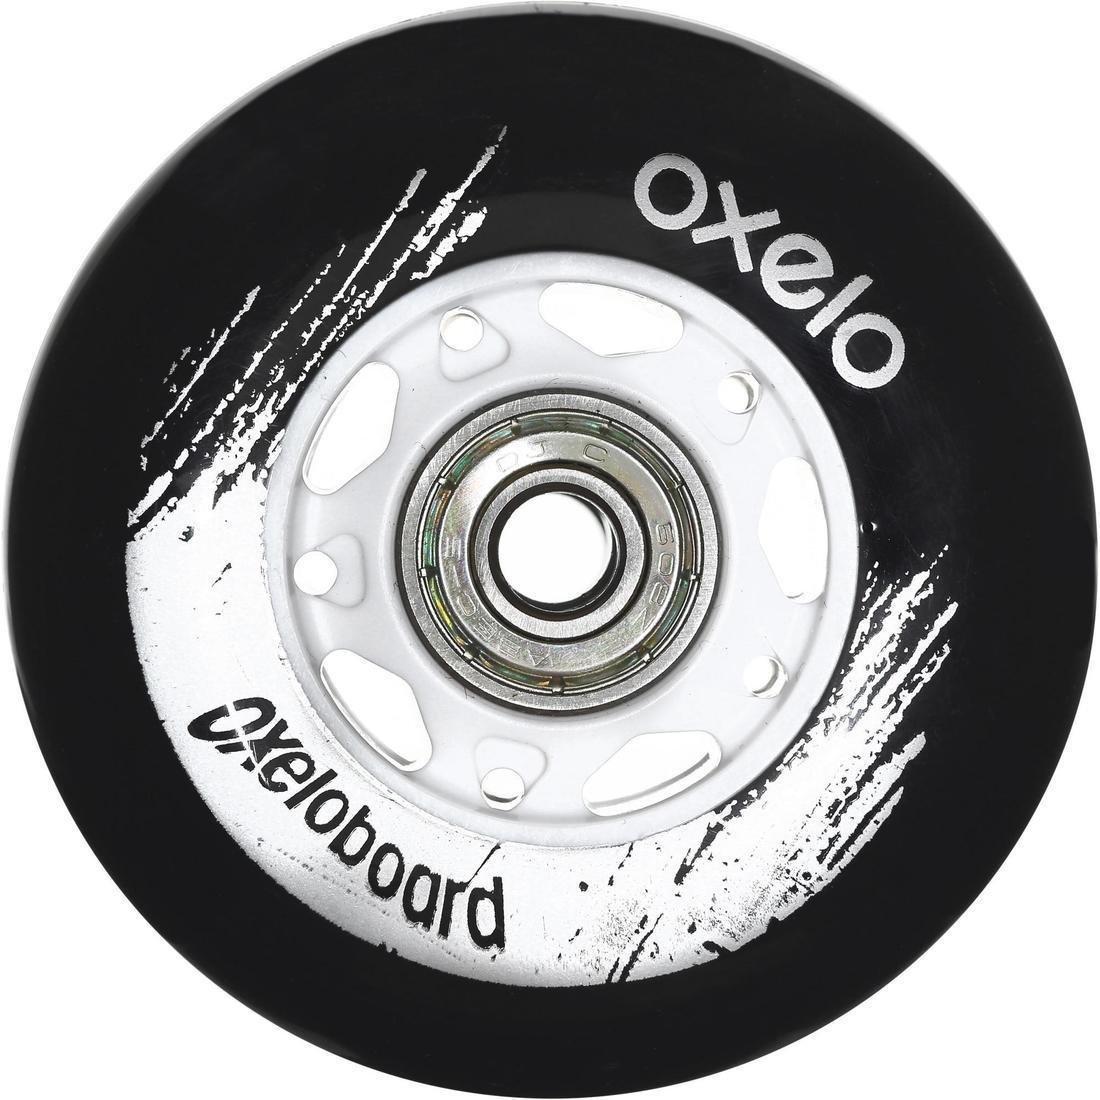 OXELO - White Oxelo Waveboard Wheels Twin-Pack, Black